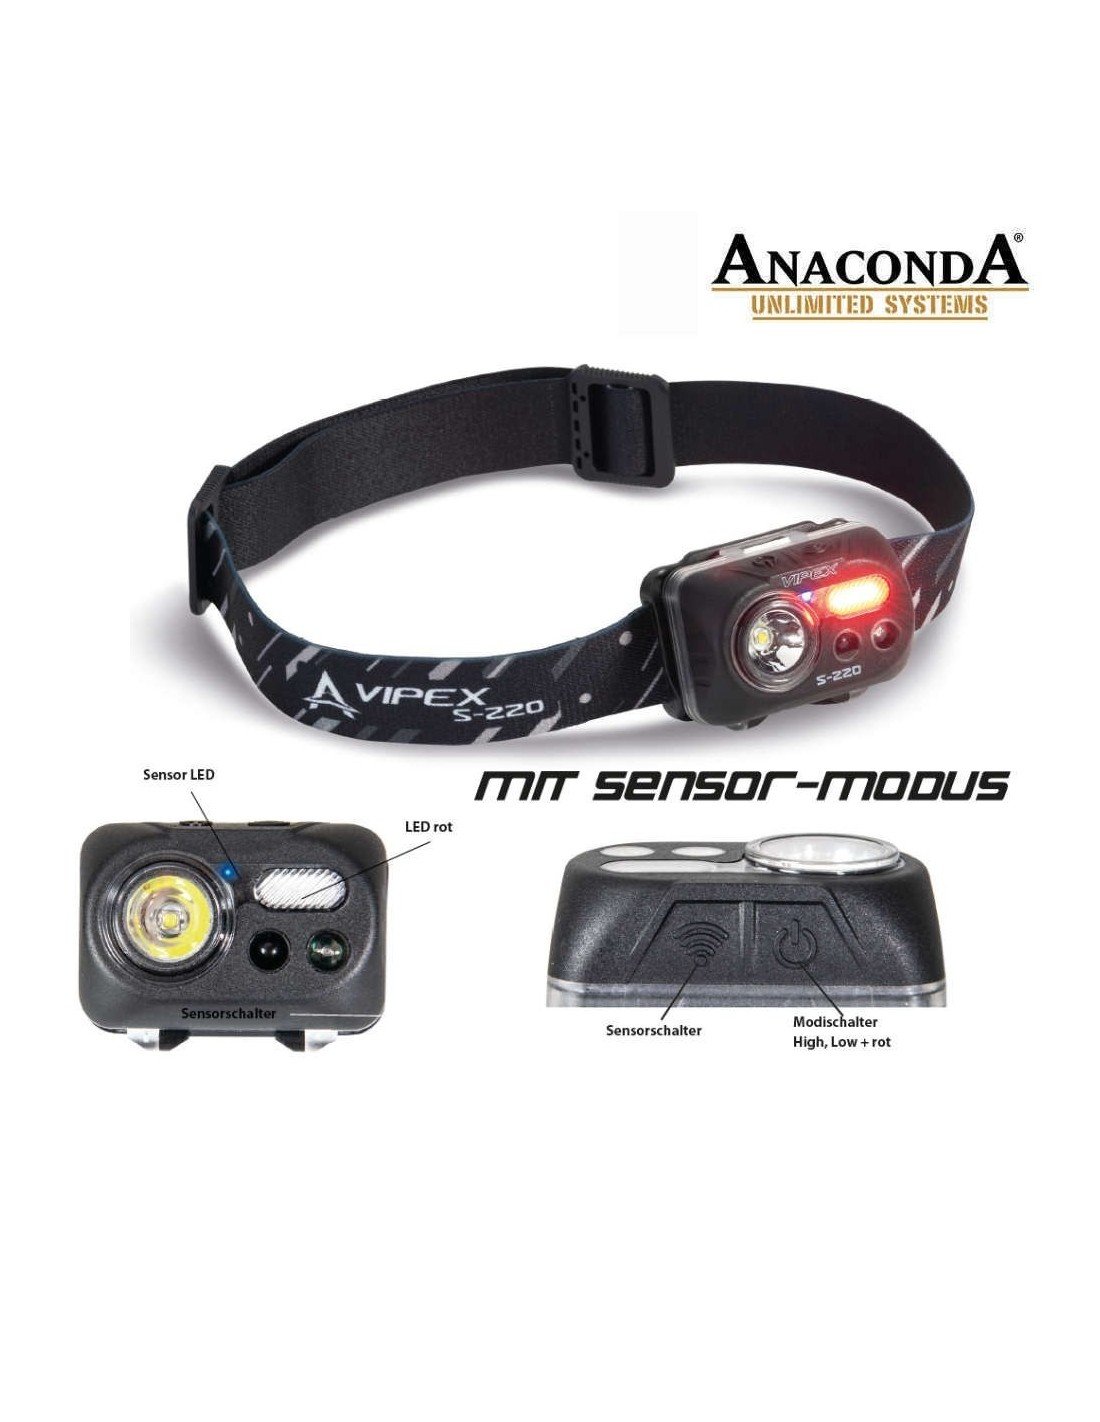 Комплект осветление - челник, лампа и фенер Anaconda